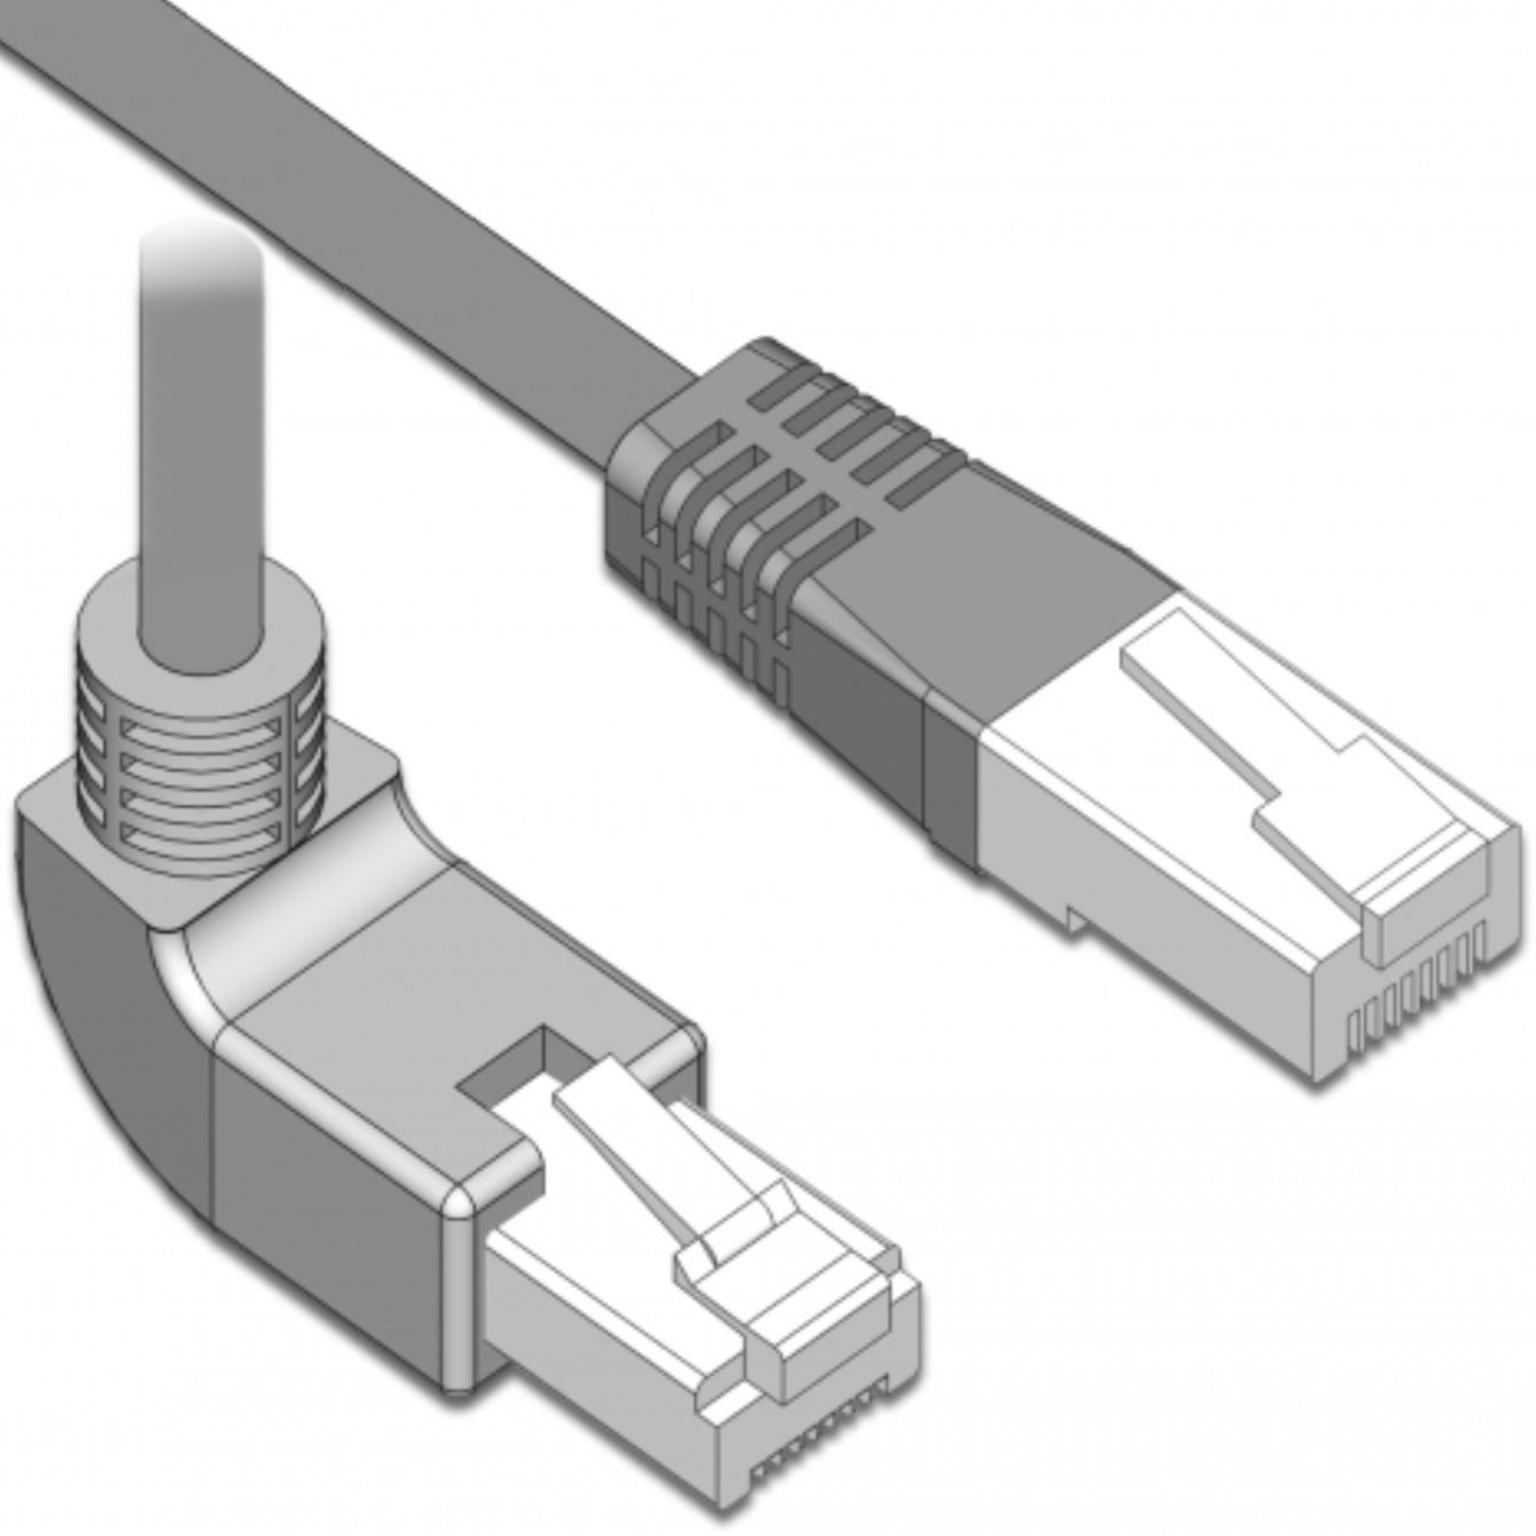 Câble SF/UTP Cat 5e coudé - Conducteurs : CU - AWG 26/7, Connexion 1 : RJ45  coudé vers le haut, Connexion 2 : RJ45 mâle, Gaine : LSZH